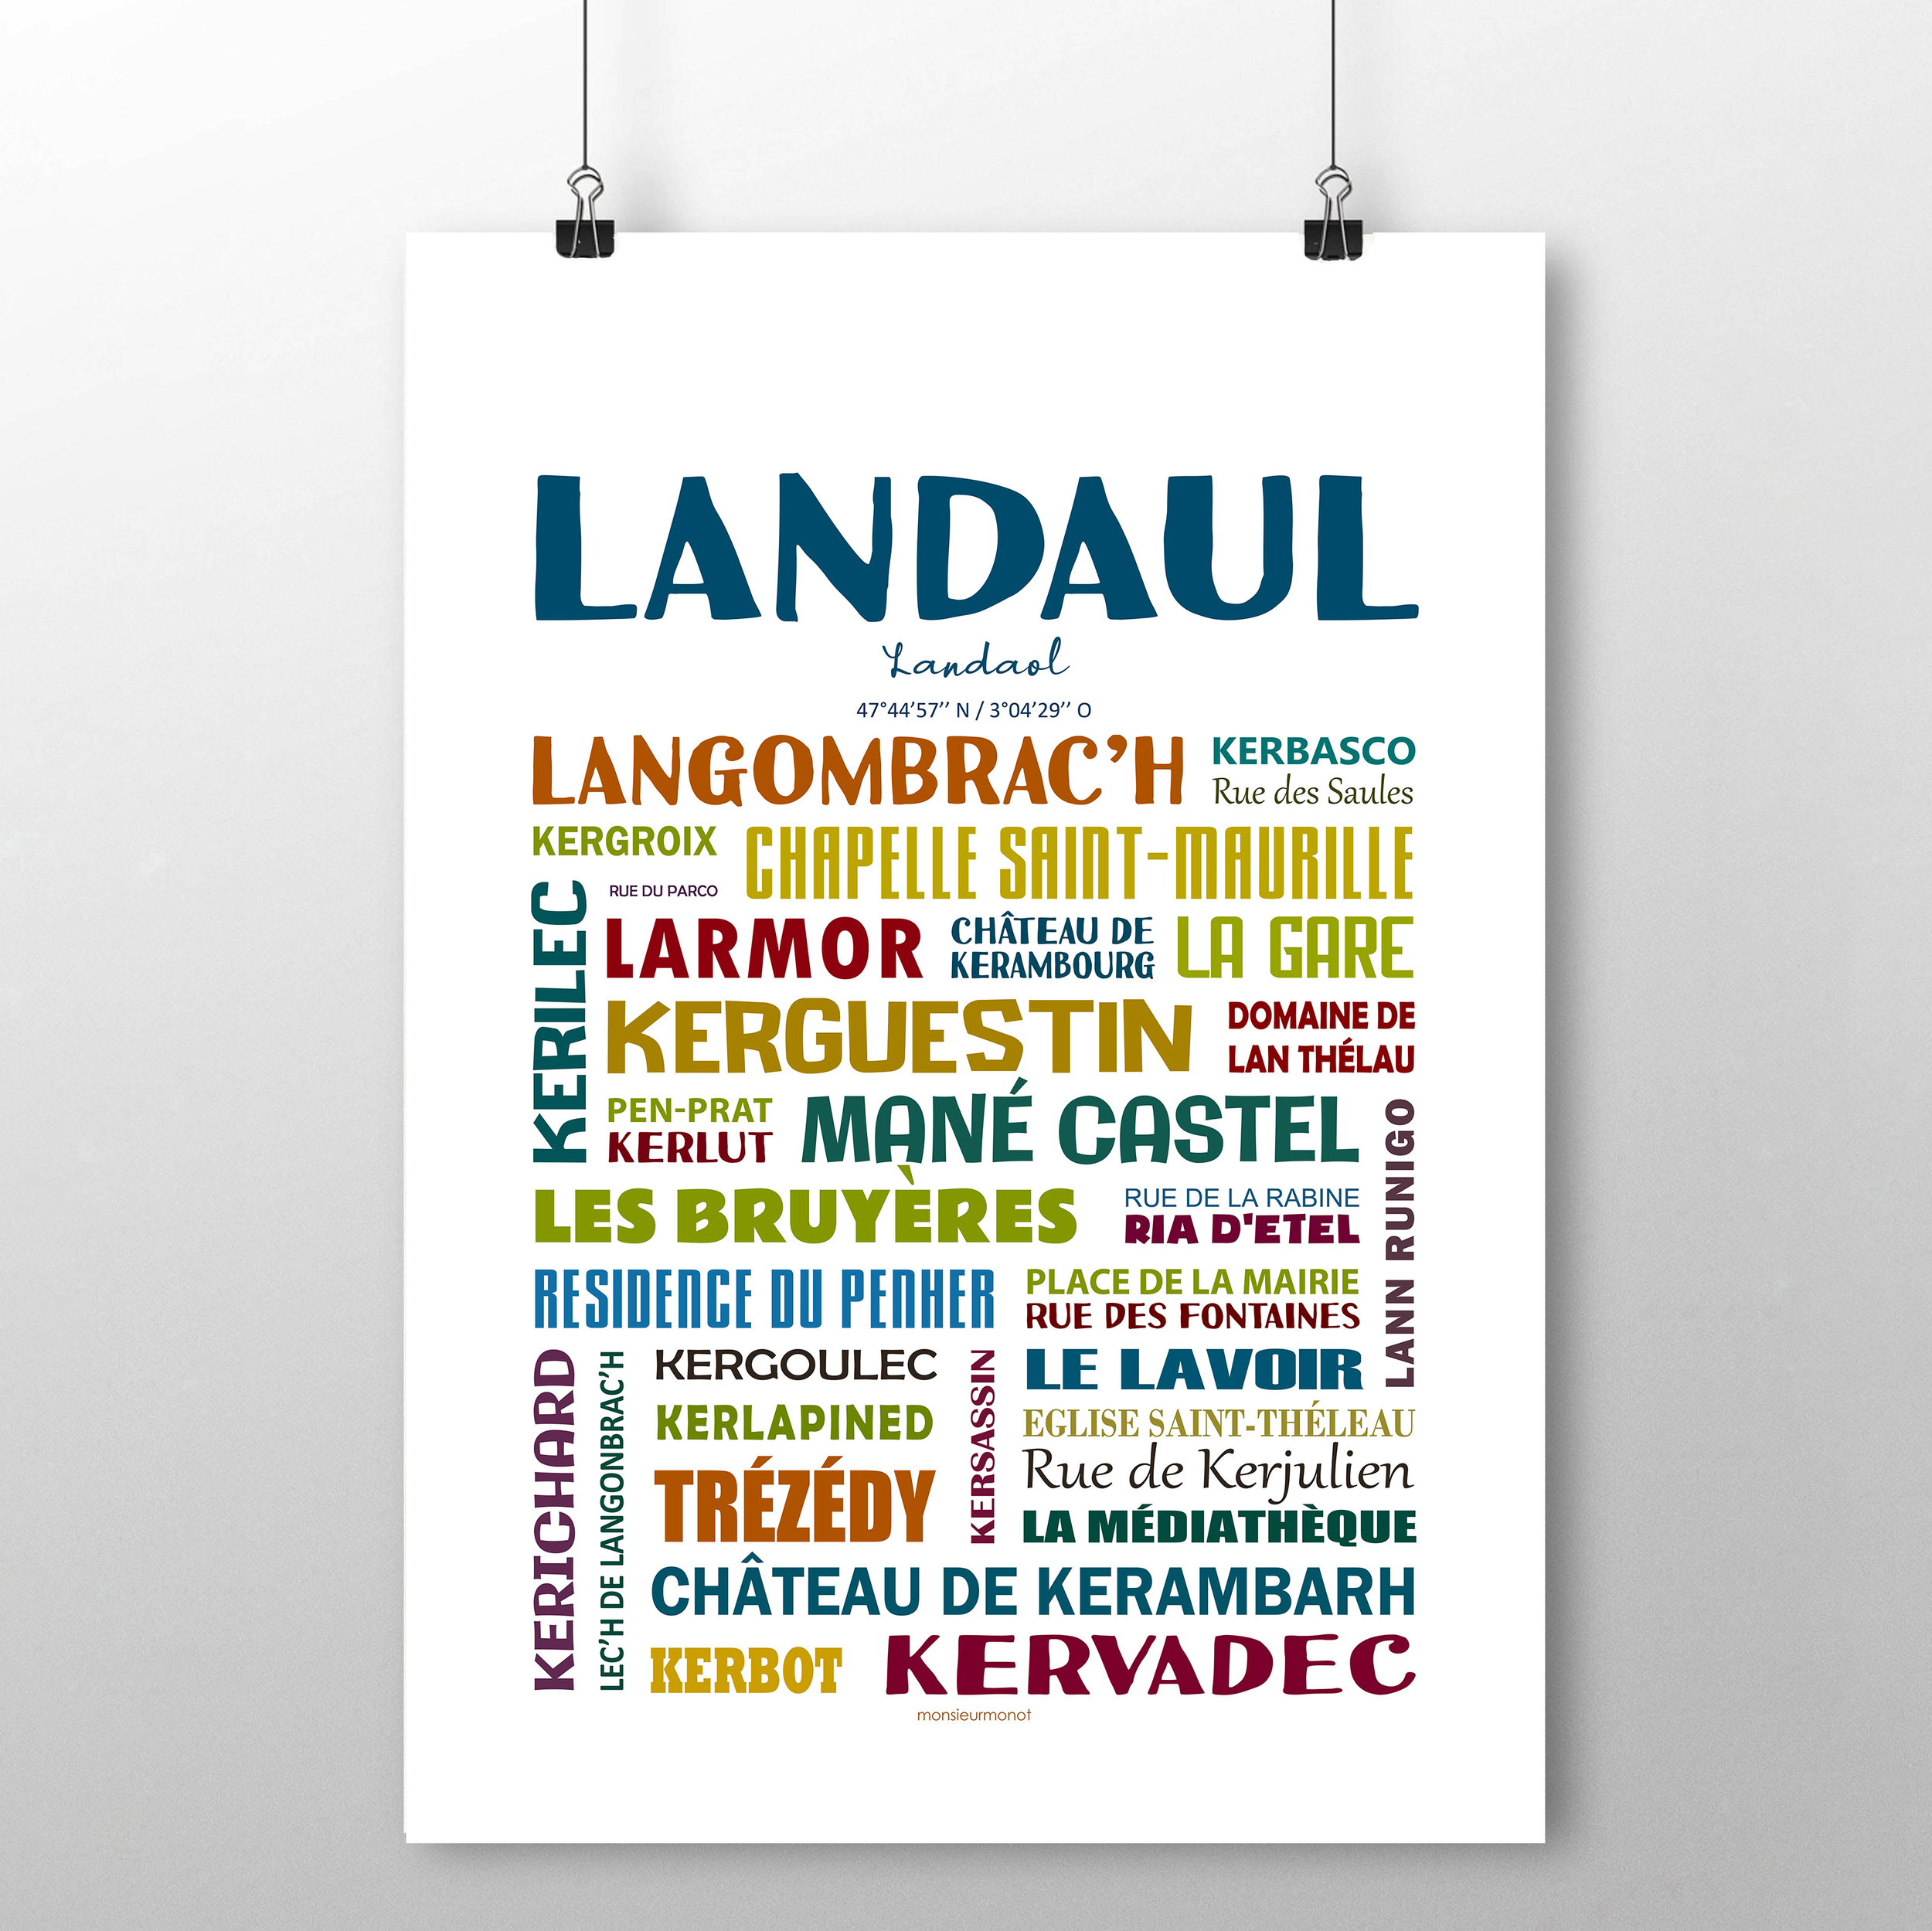 Landaul 2